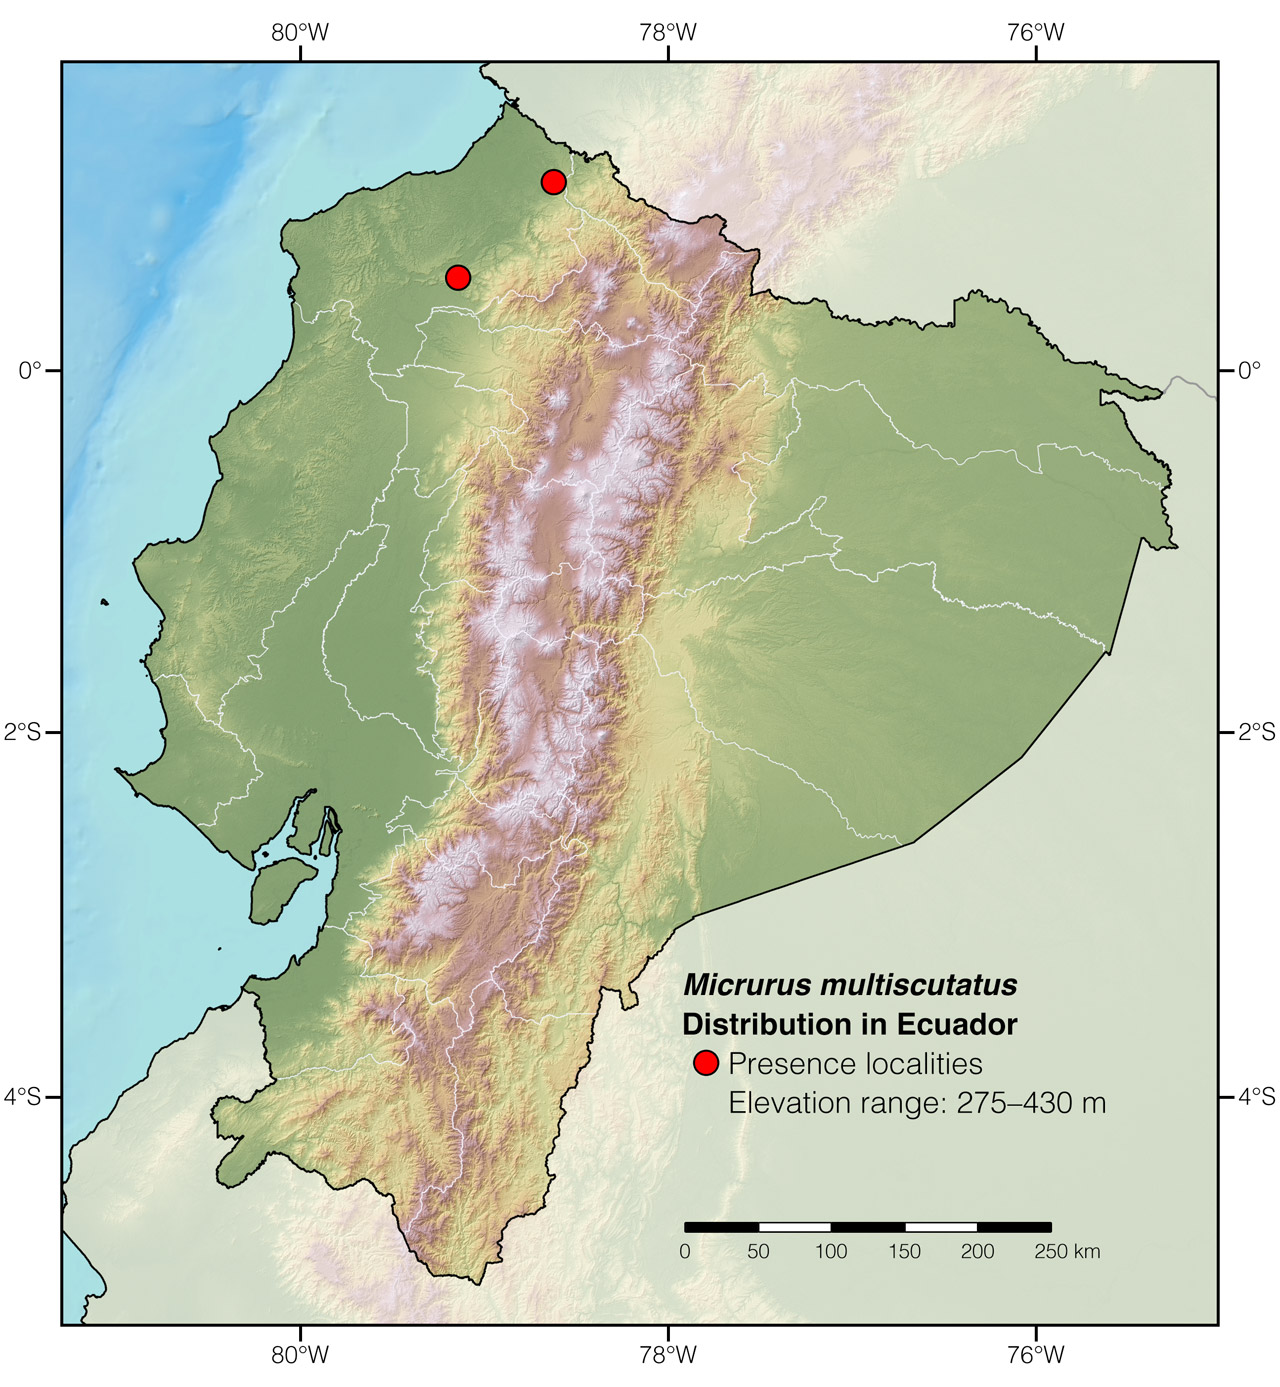 Distribution of Micrurus multiscutatus in Ecuador